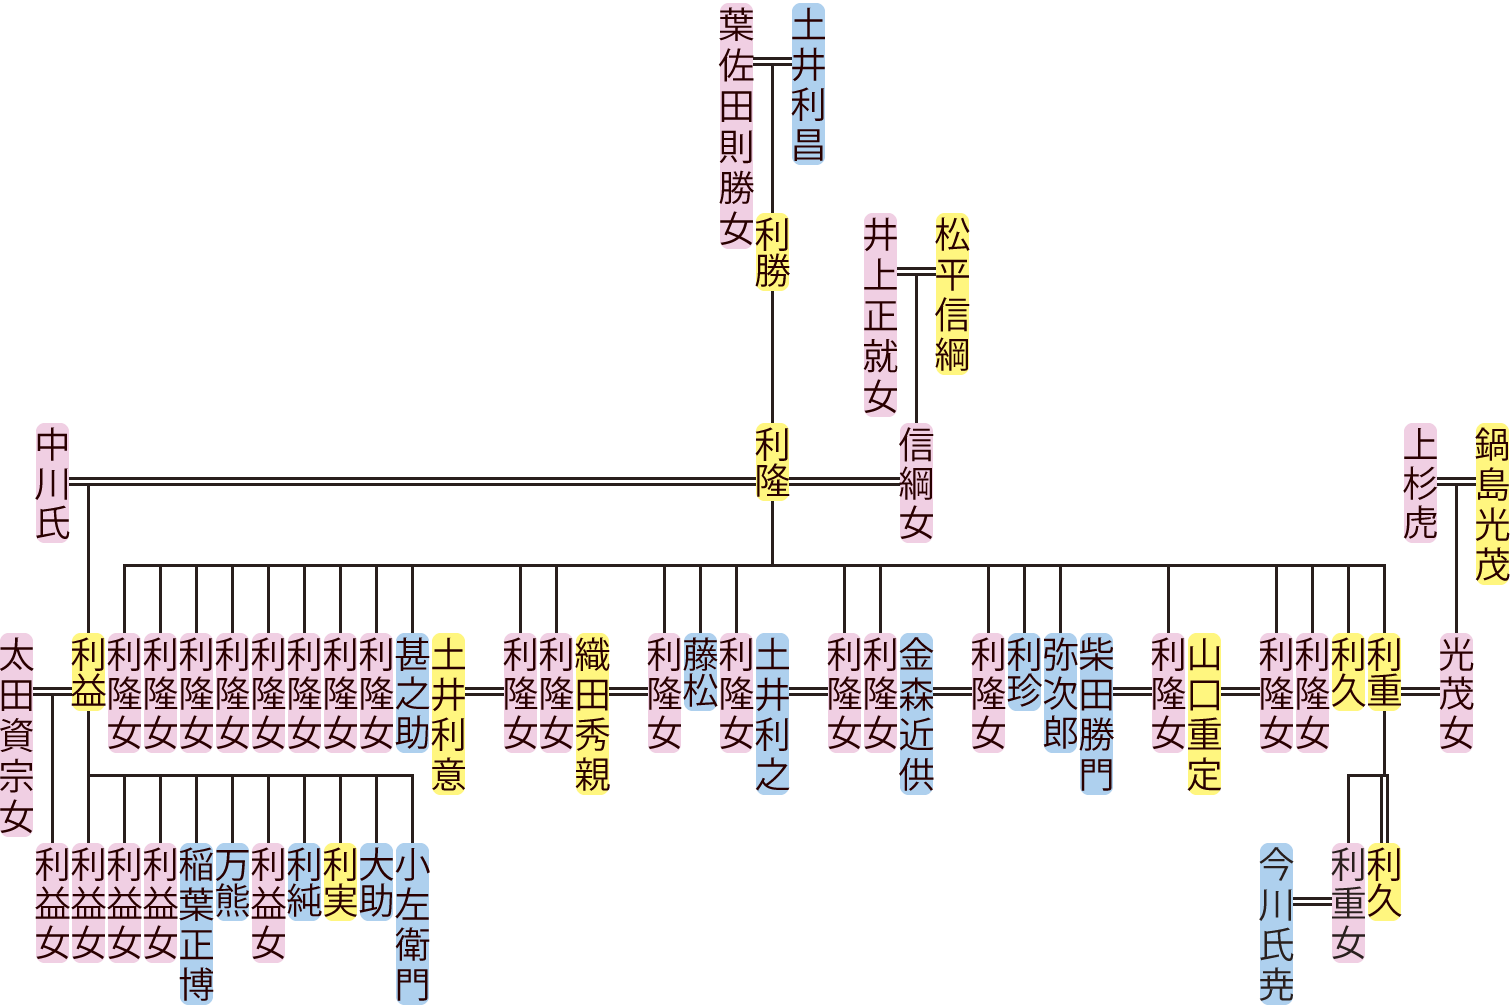 土井利隆の系図